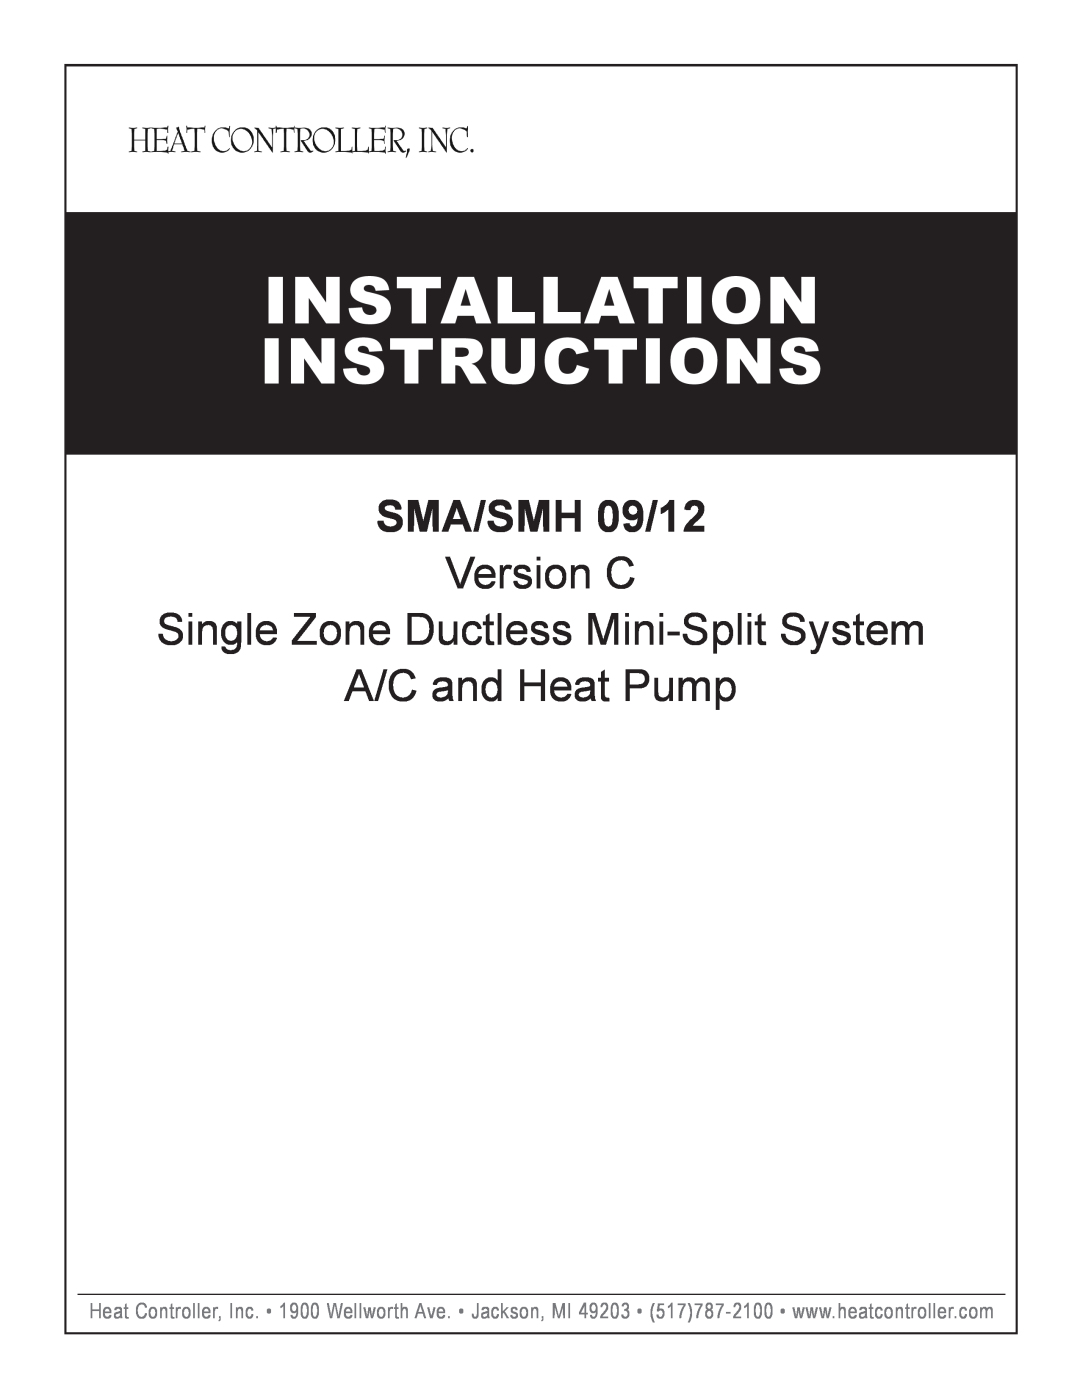 Heat Controller SMA 12, SMH 12 installation instructions Installation, Instructions, SMA/SMH 09/12, A/C and Heat Pump 